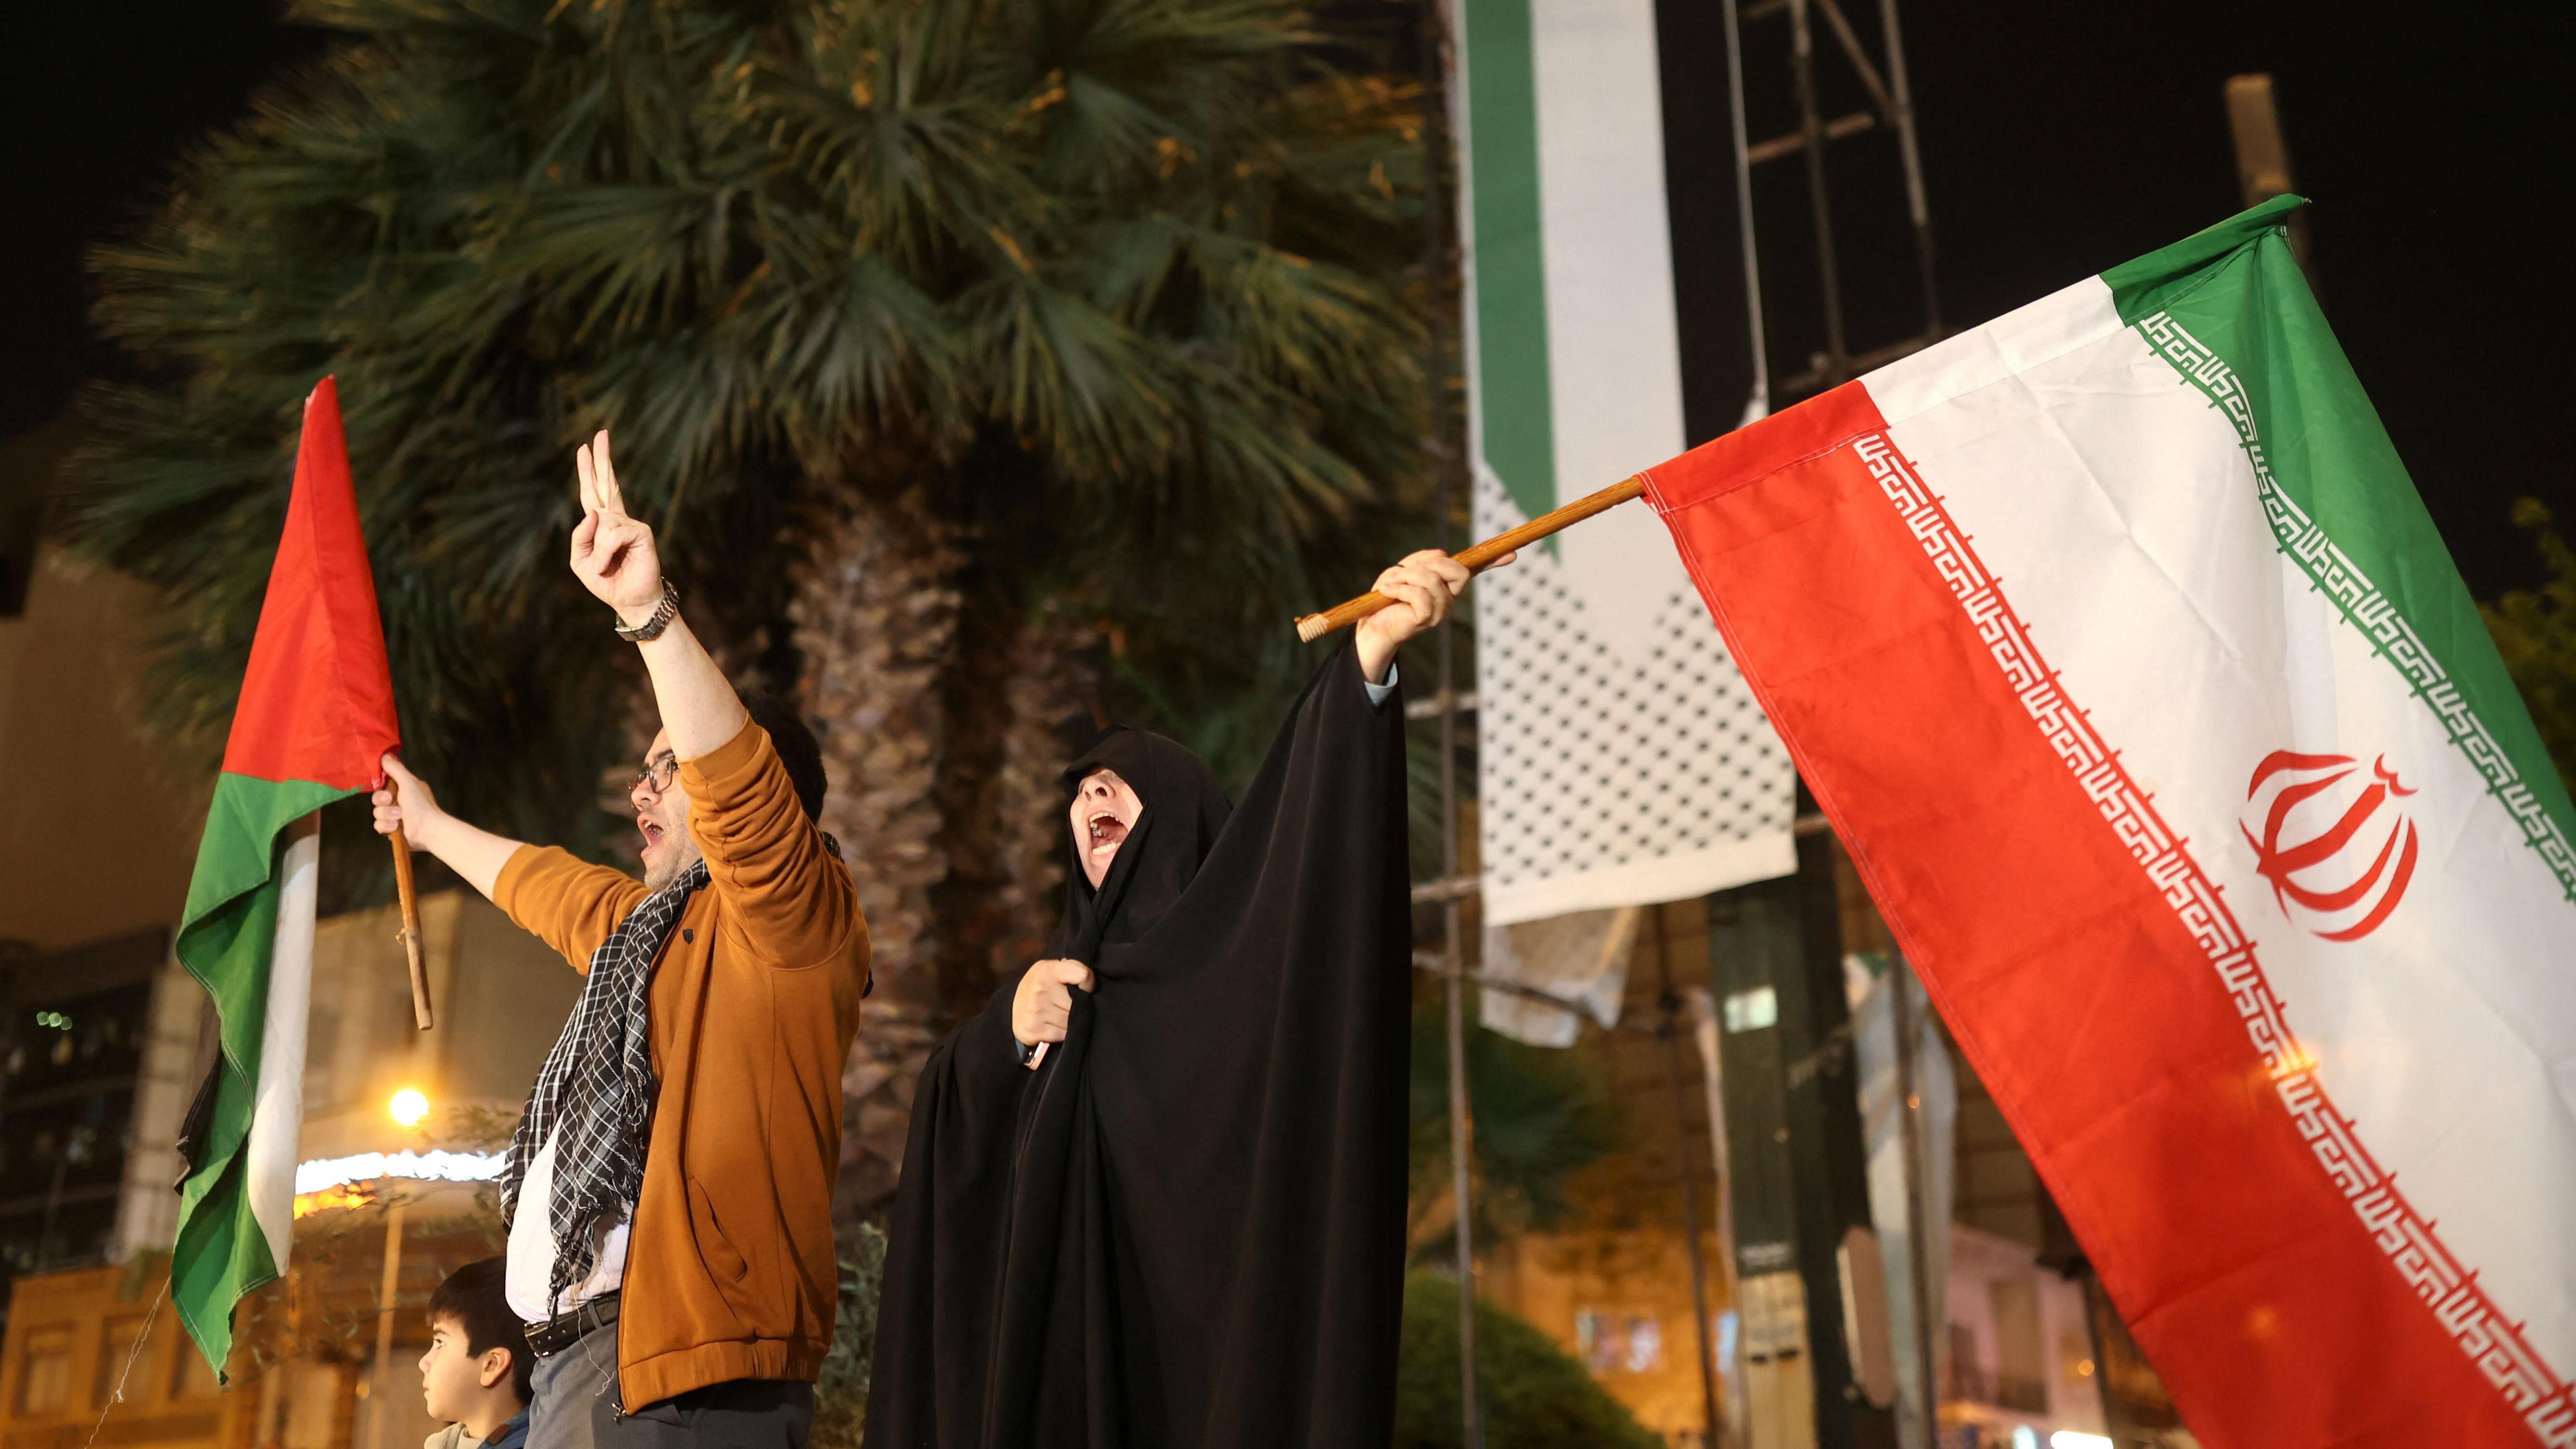 Personas celebran los ataques de la Guardia Revolucionaria Iraní a territorio israelí

Reuters